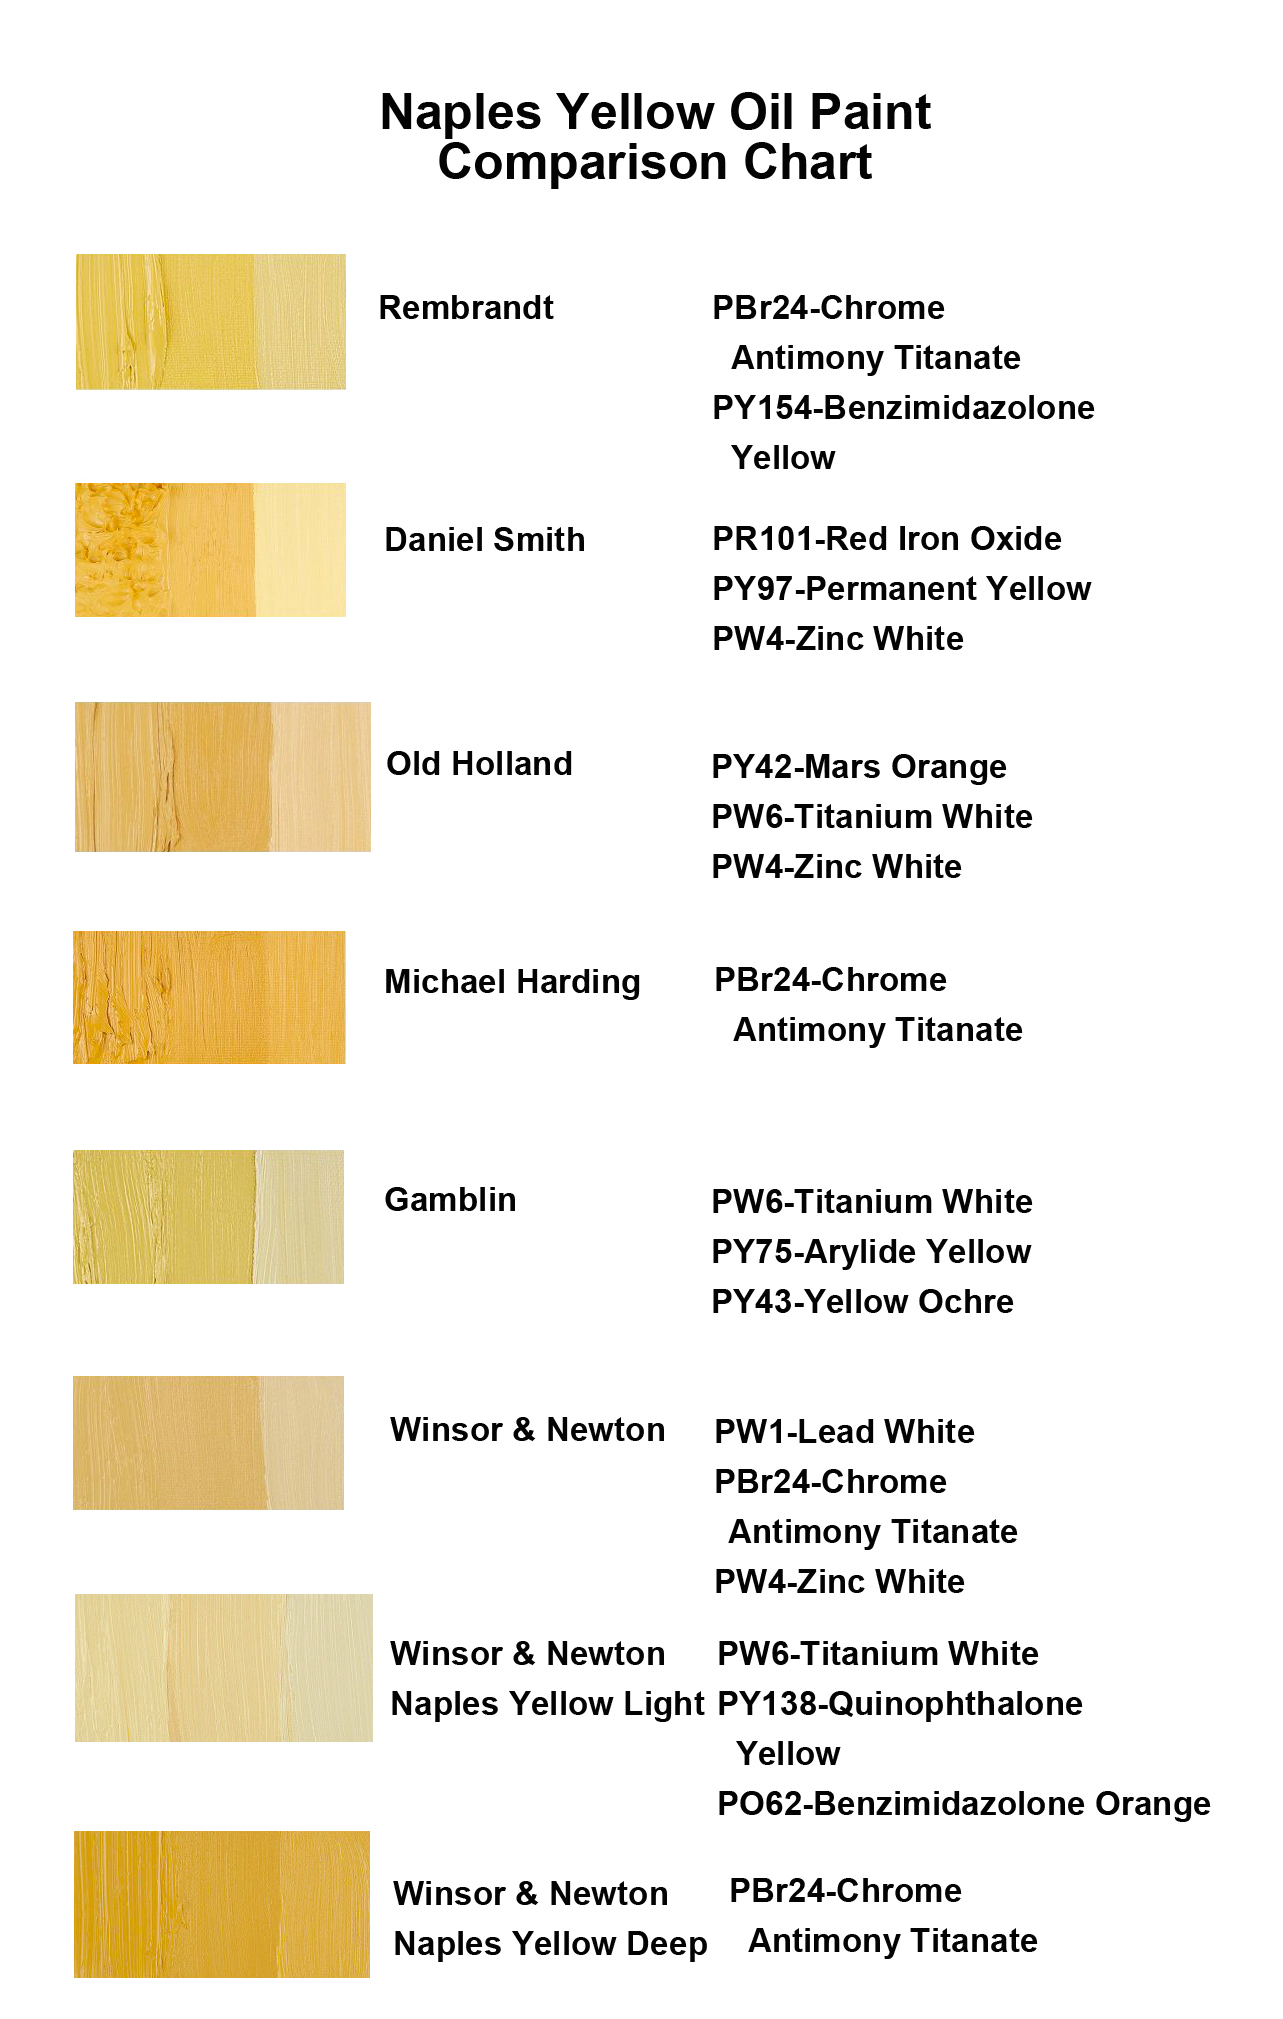 Naples Yellow Oil Paint Comparison Chart